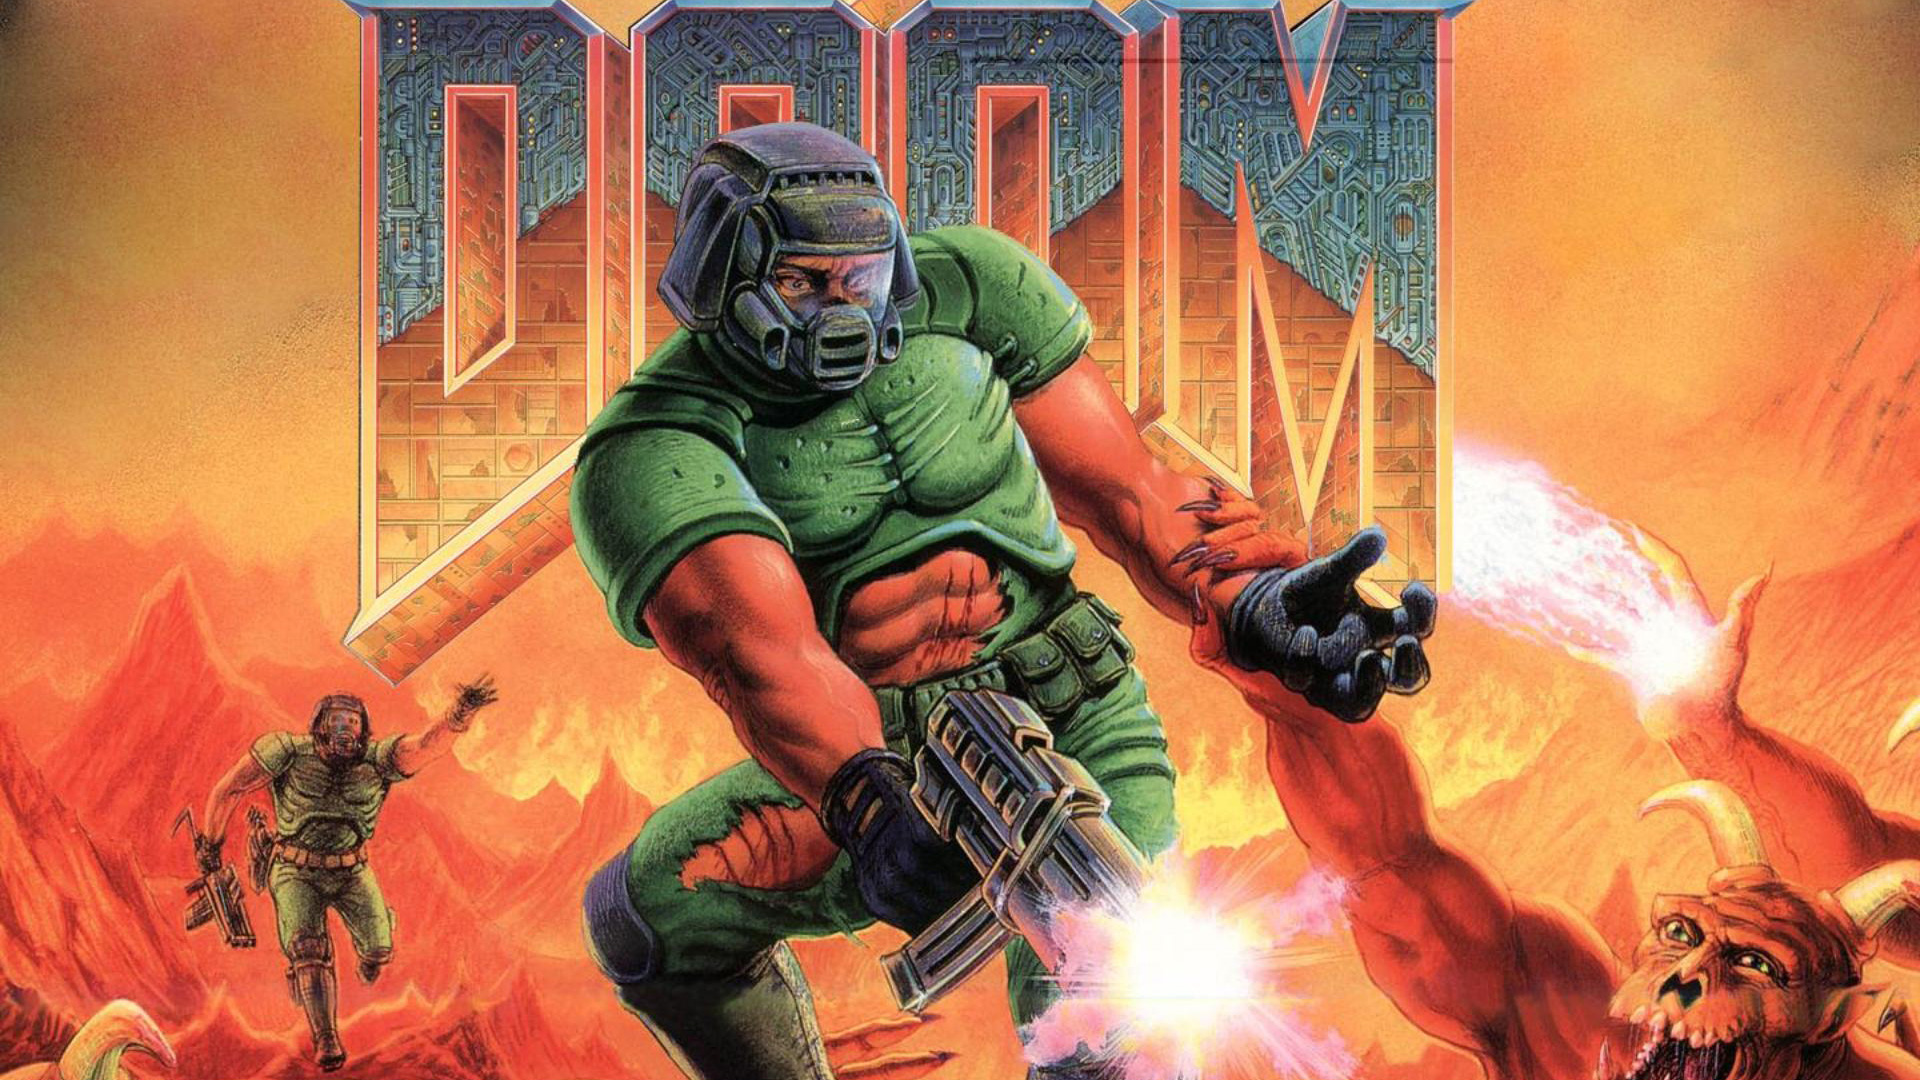 Doom 1920x1080